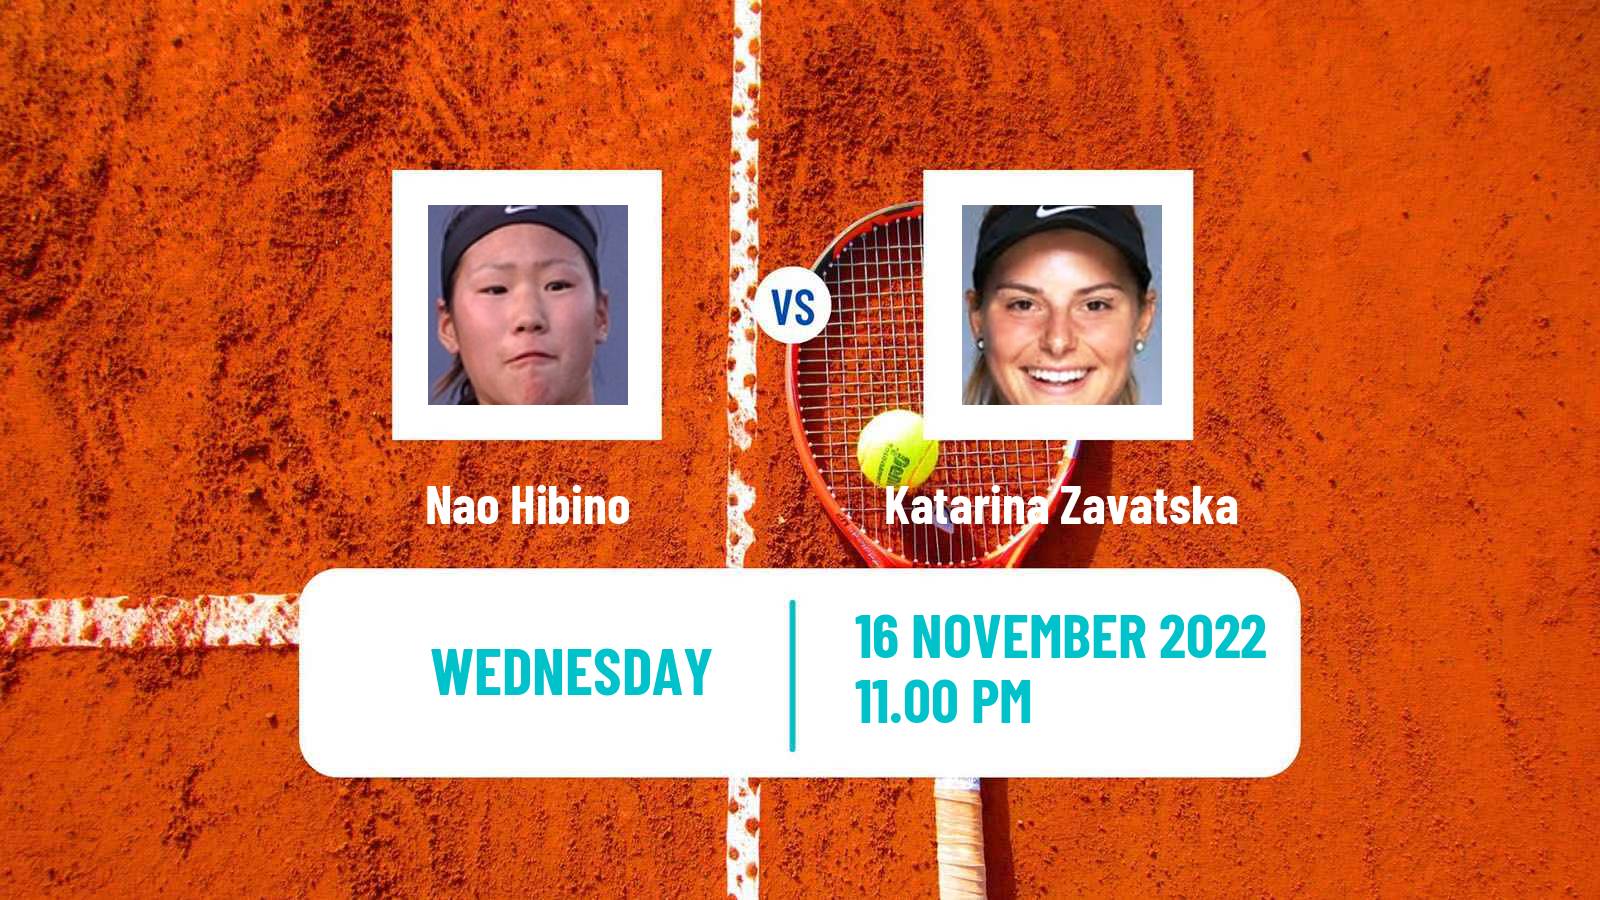 Tennis ITF Tournaments Nao Hibino - Katarina Zavatska